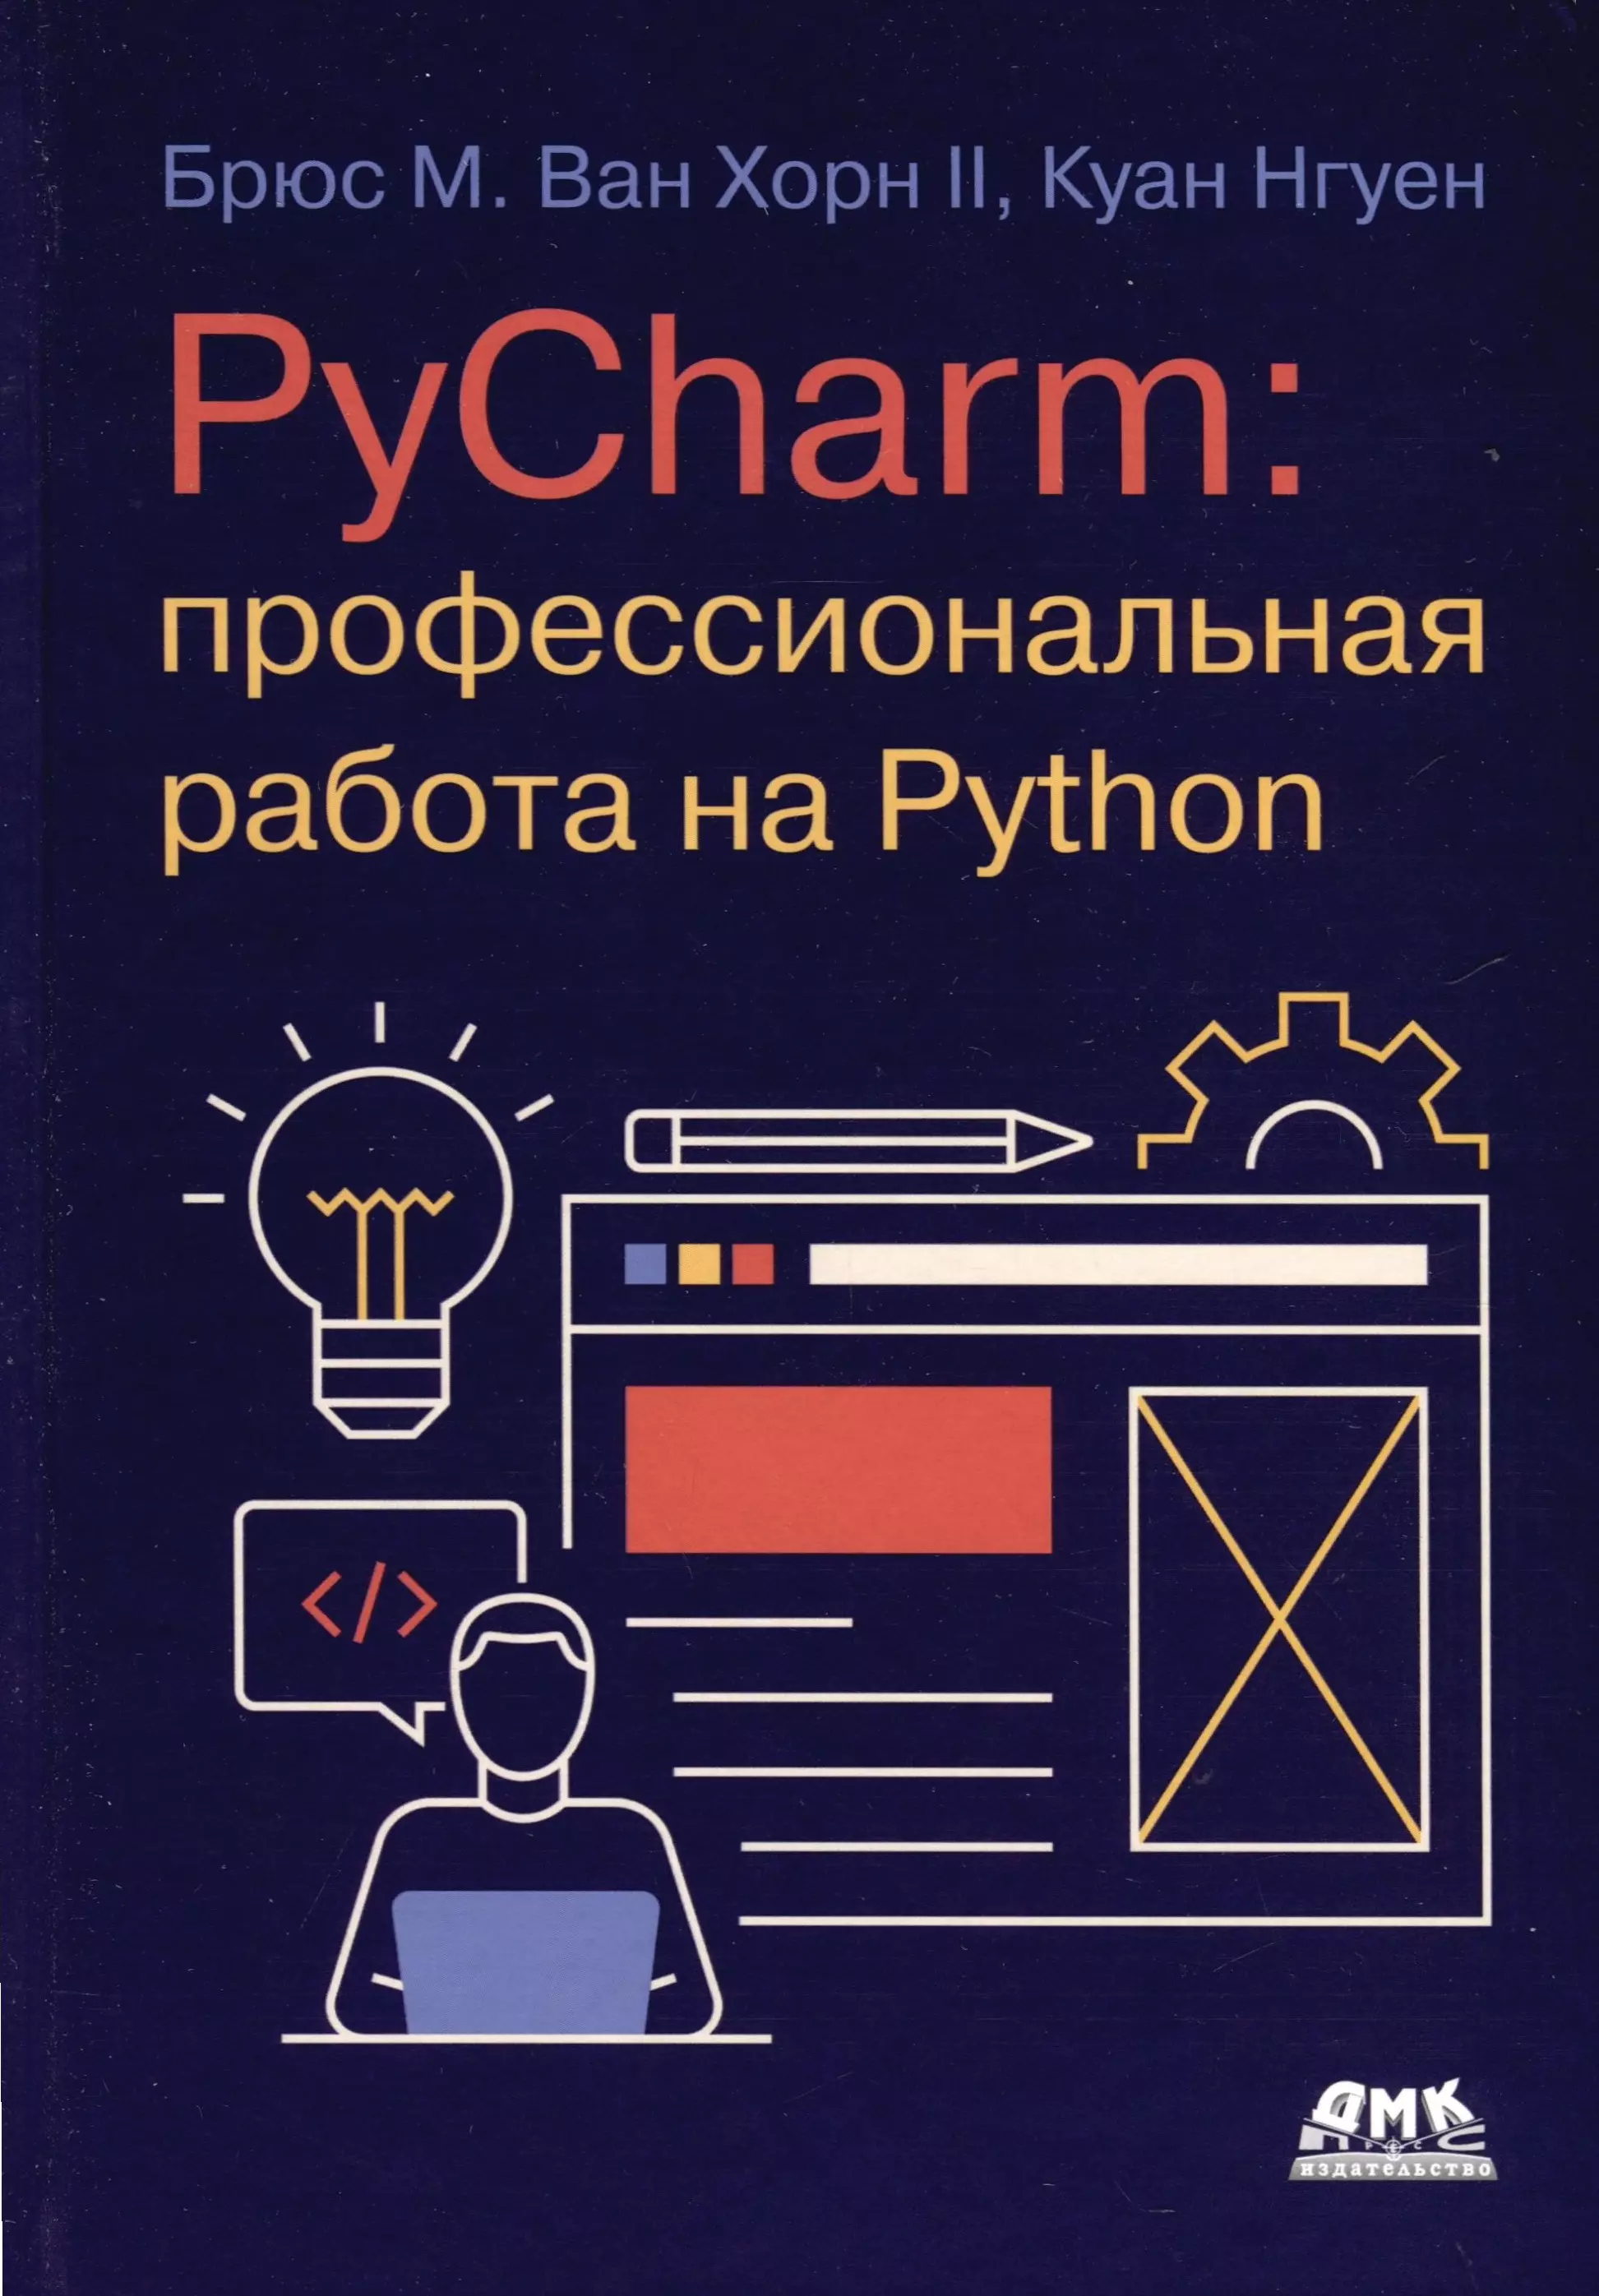 Нгуен Куан PYCHARM: профессиональная работа на PYTHON python cловари и множества